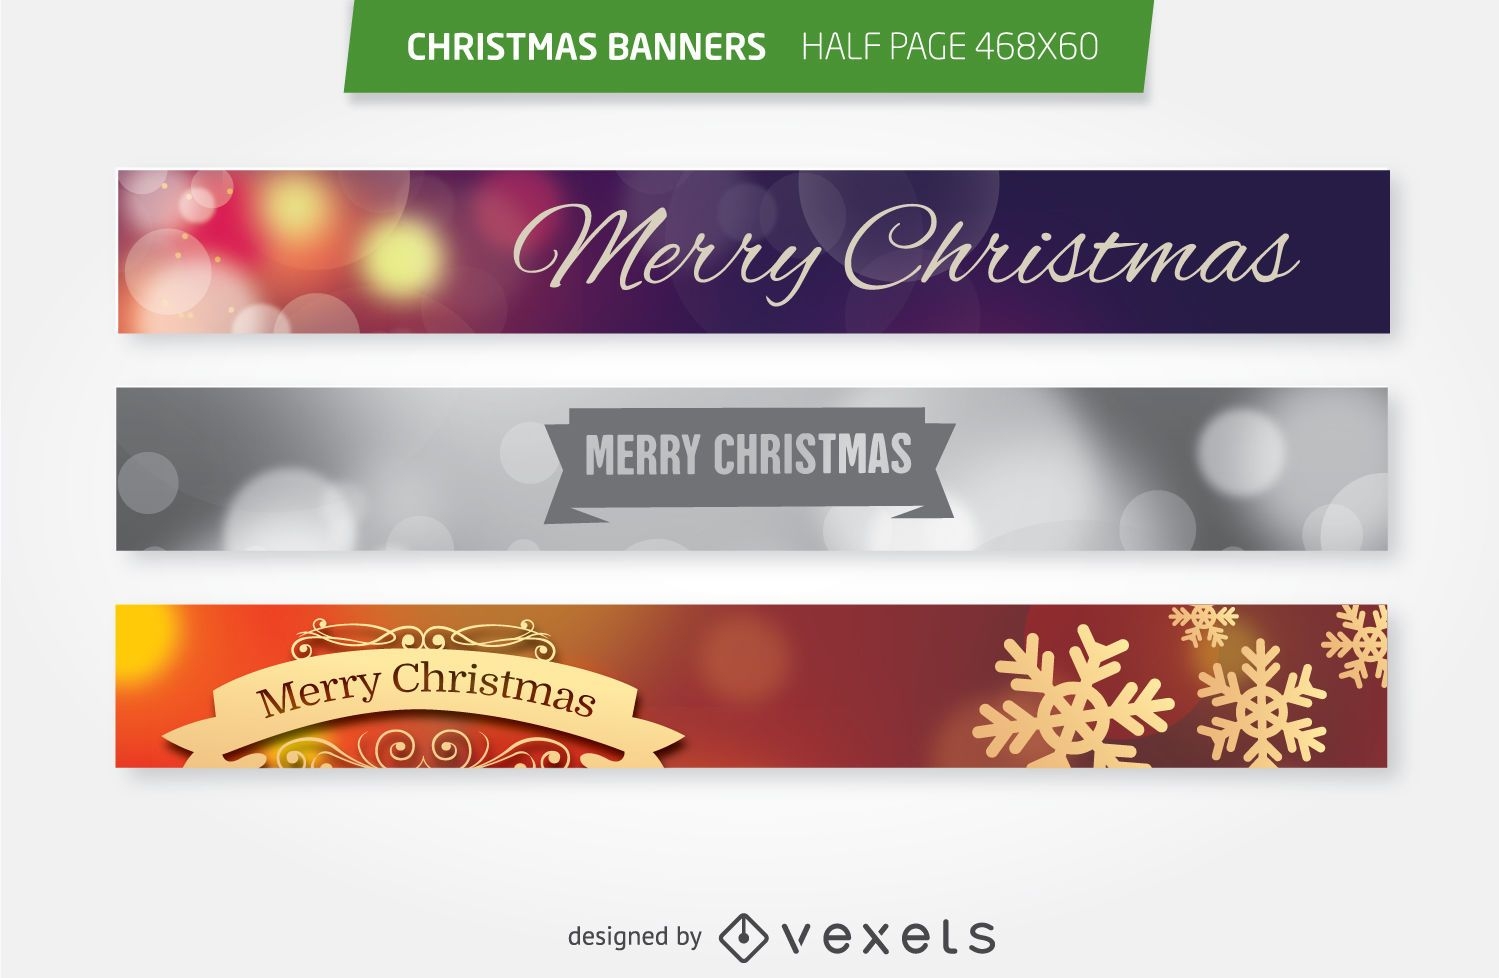 Christmas 468x60 half page ad banners set